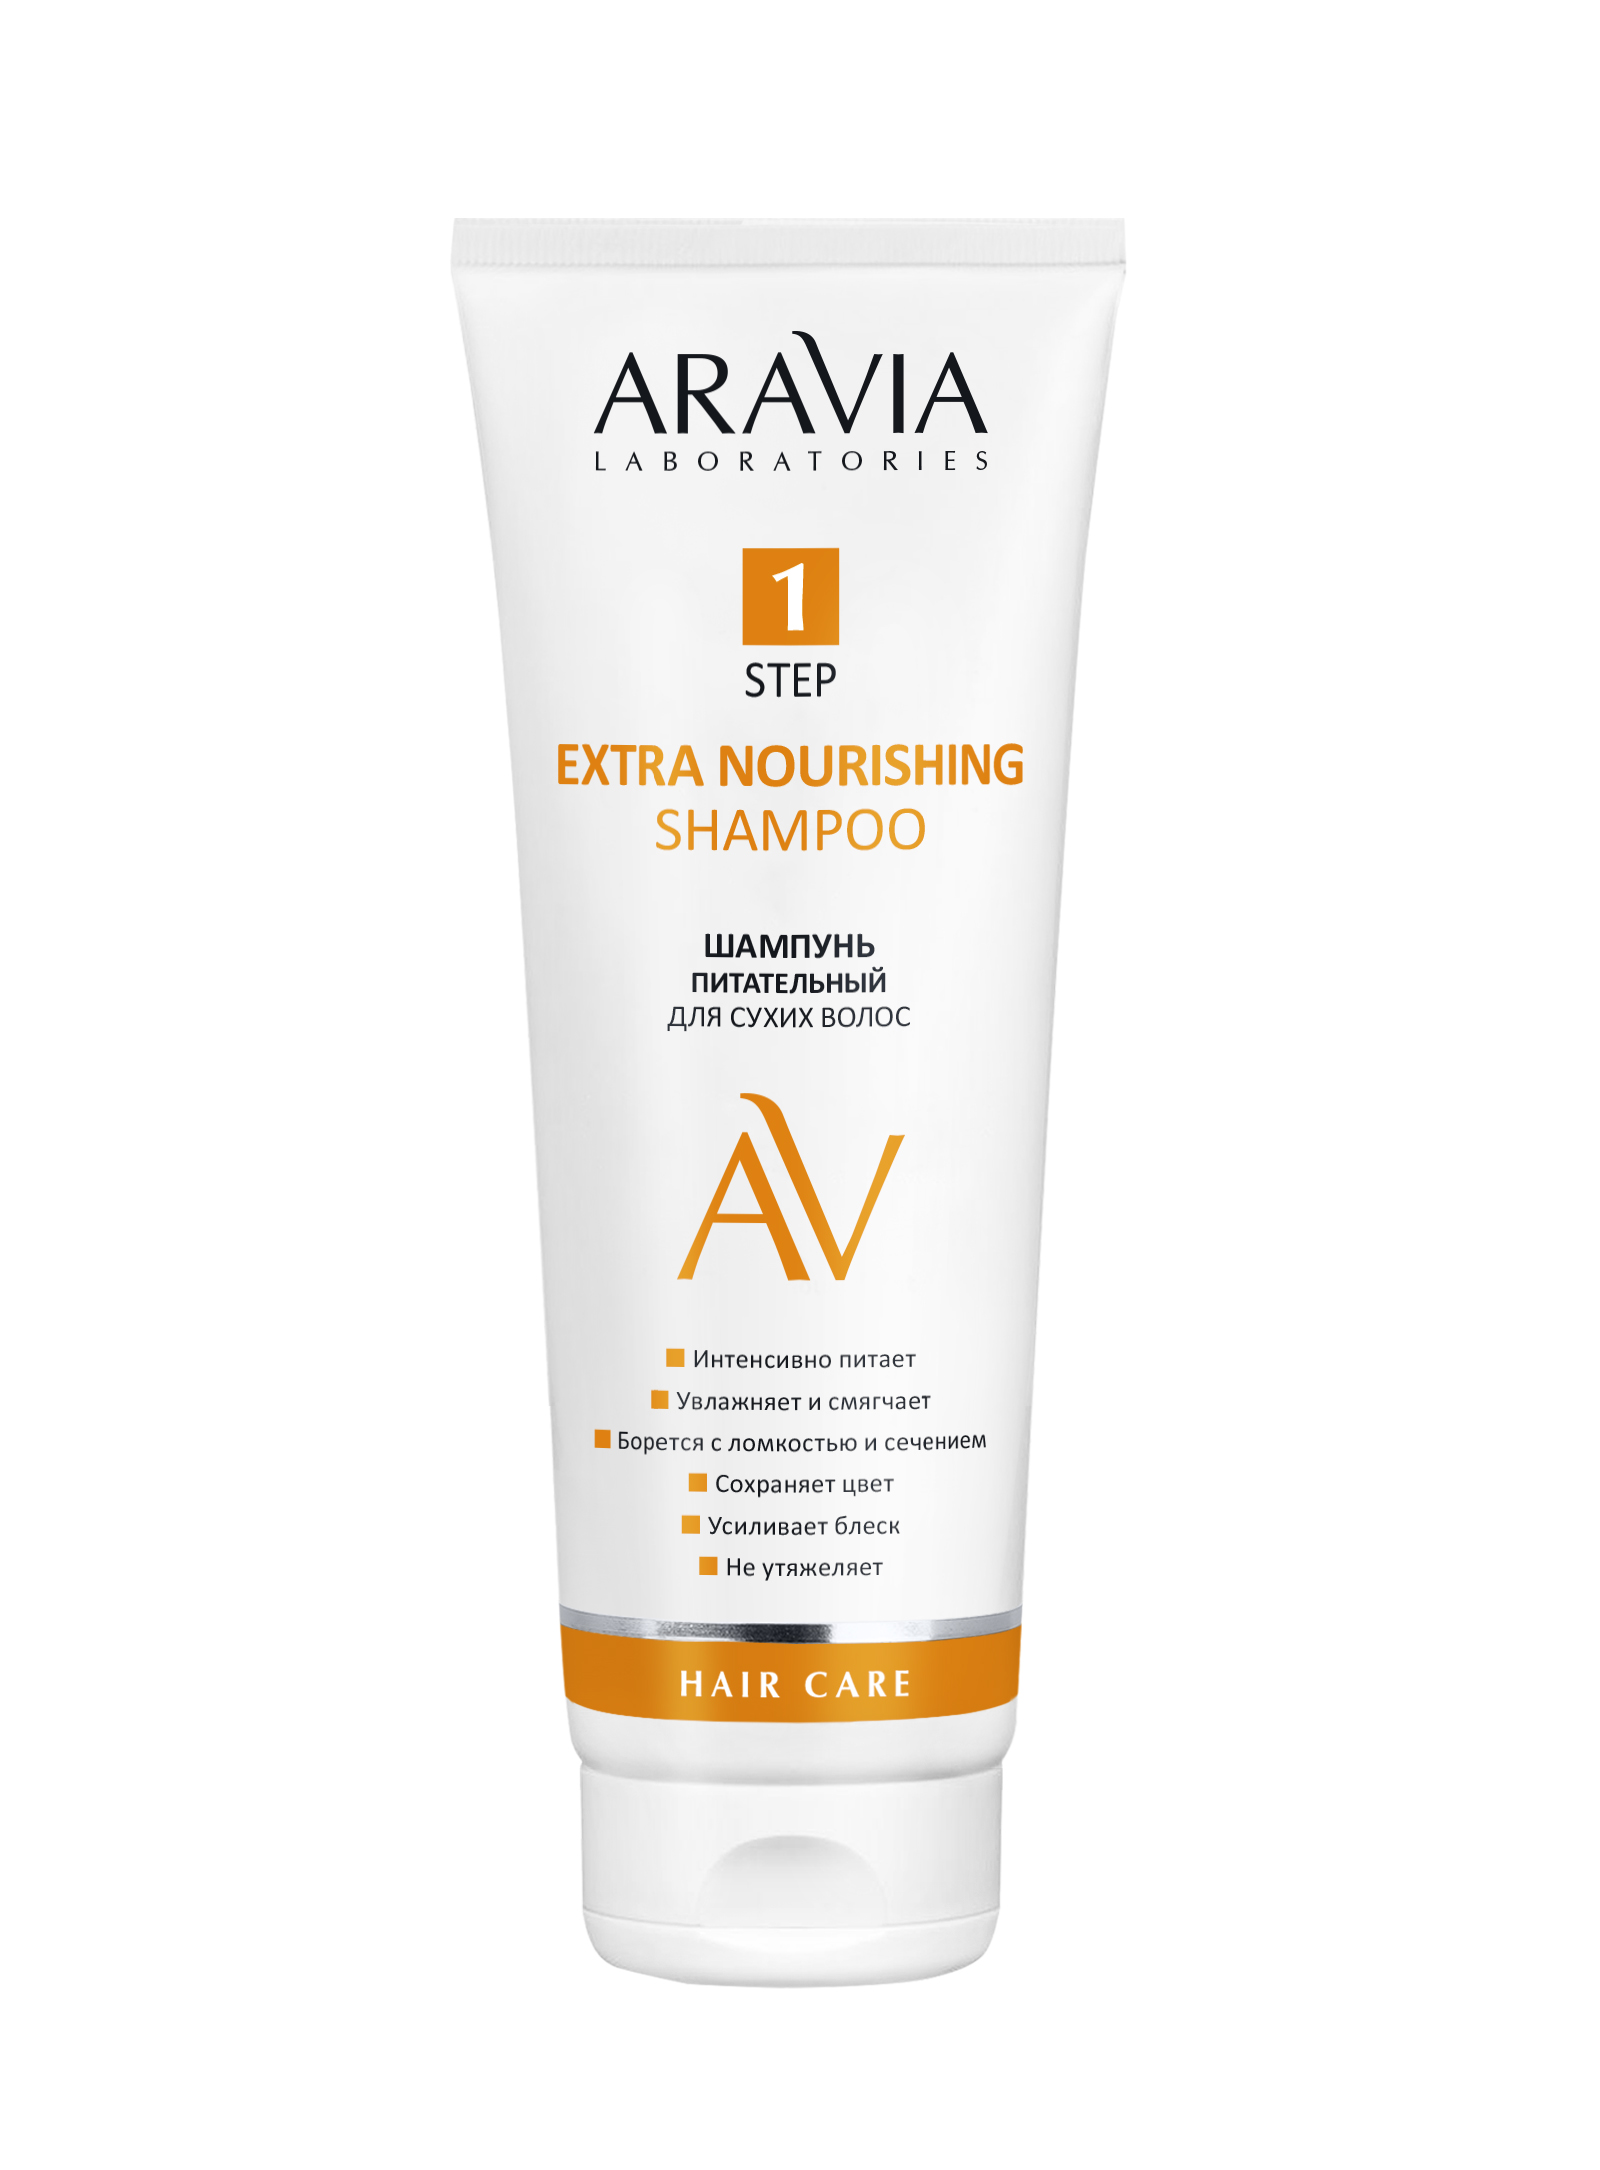 ARAVIA Laboratories Шампунь питательный для сухих волос Extra Nourishing Shampoo, 250мл